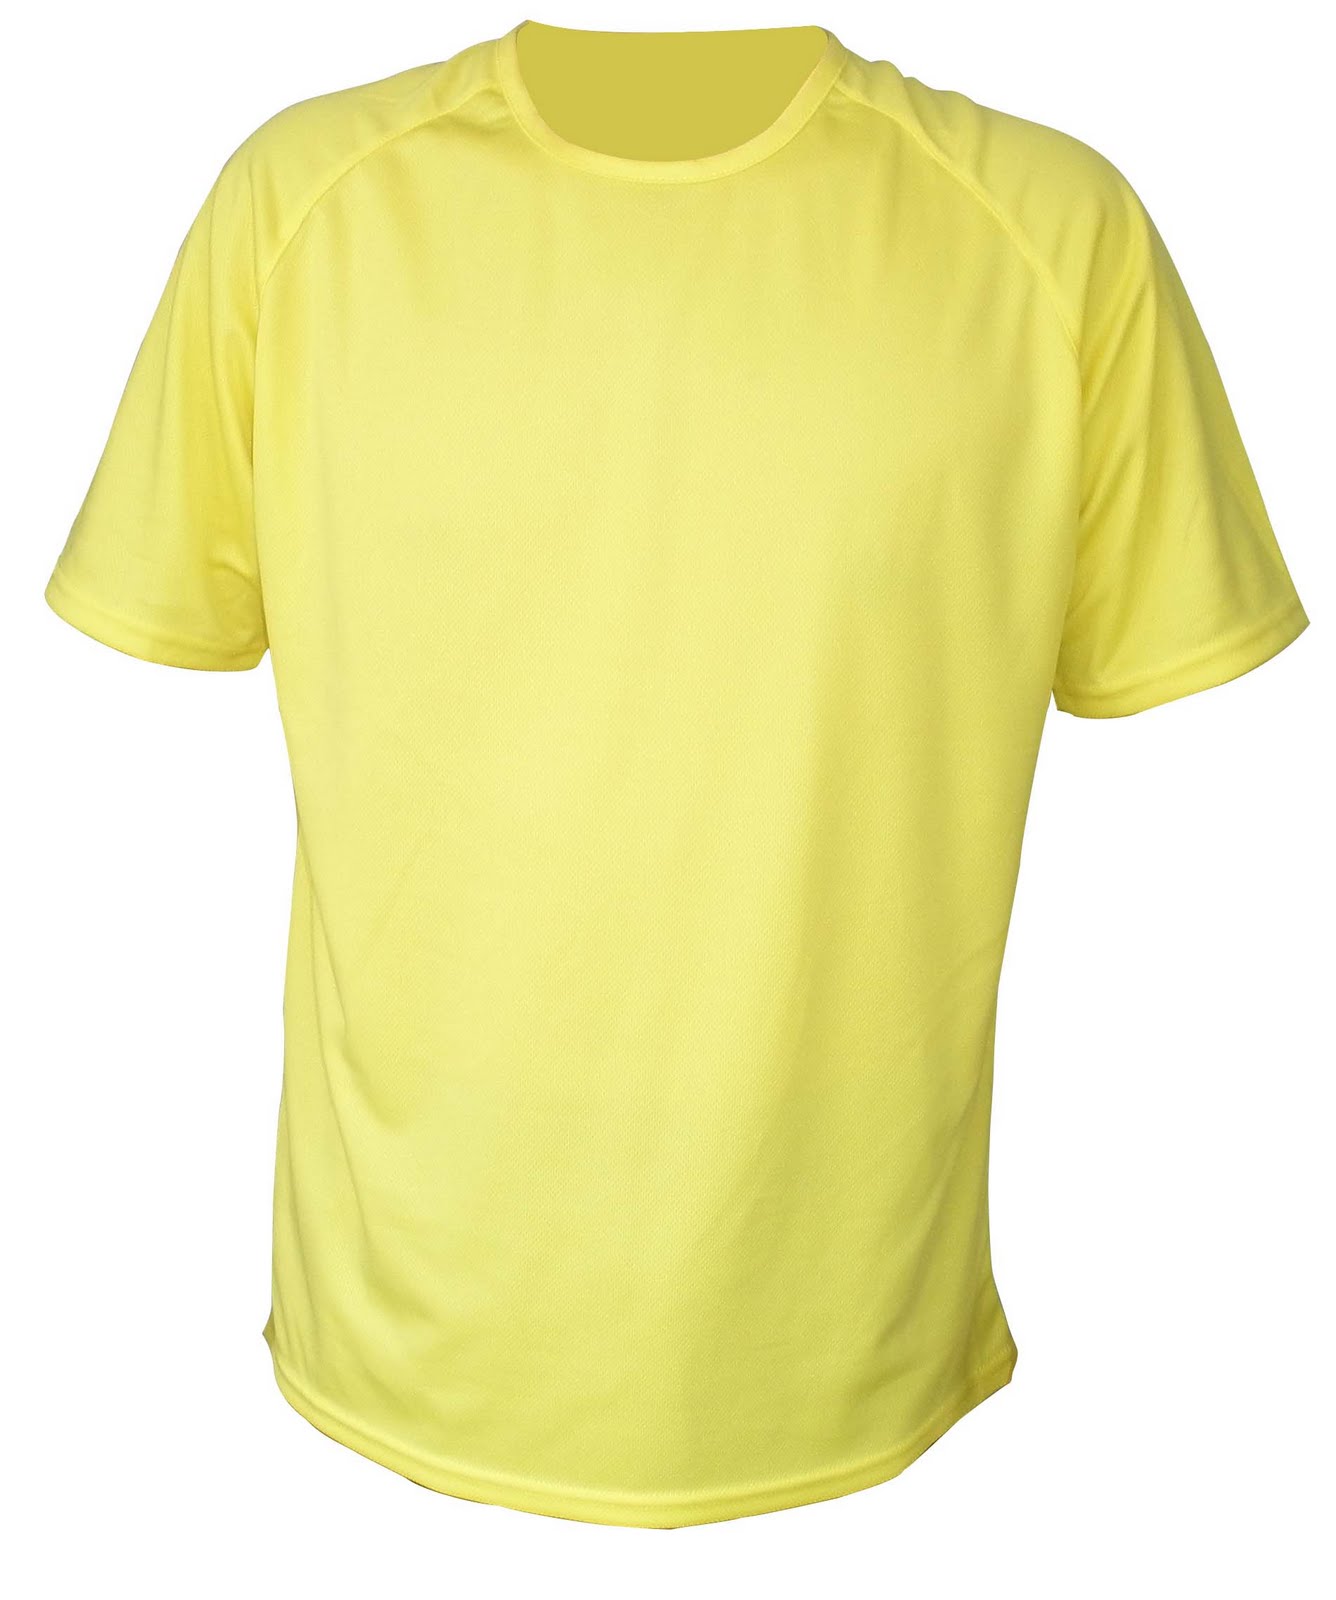 T-Shirt Designs: Blank t shirts